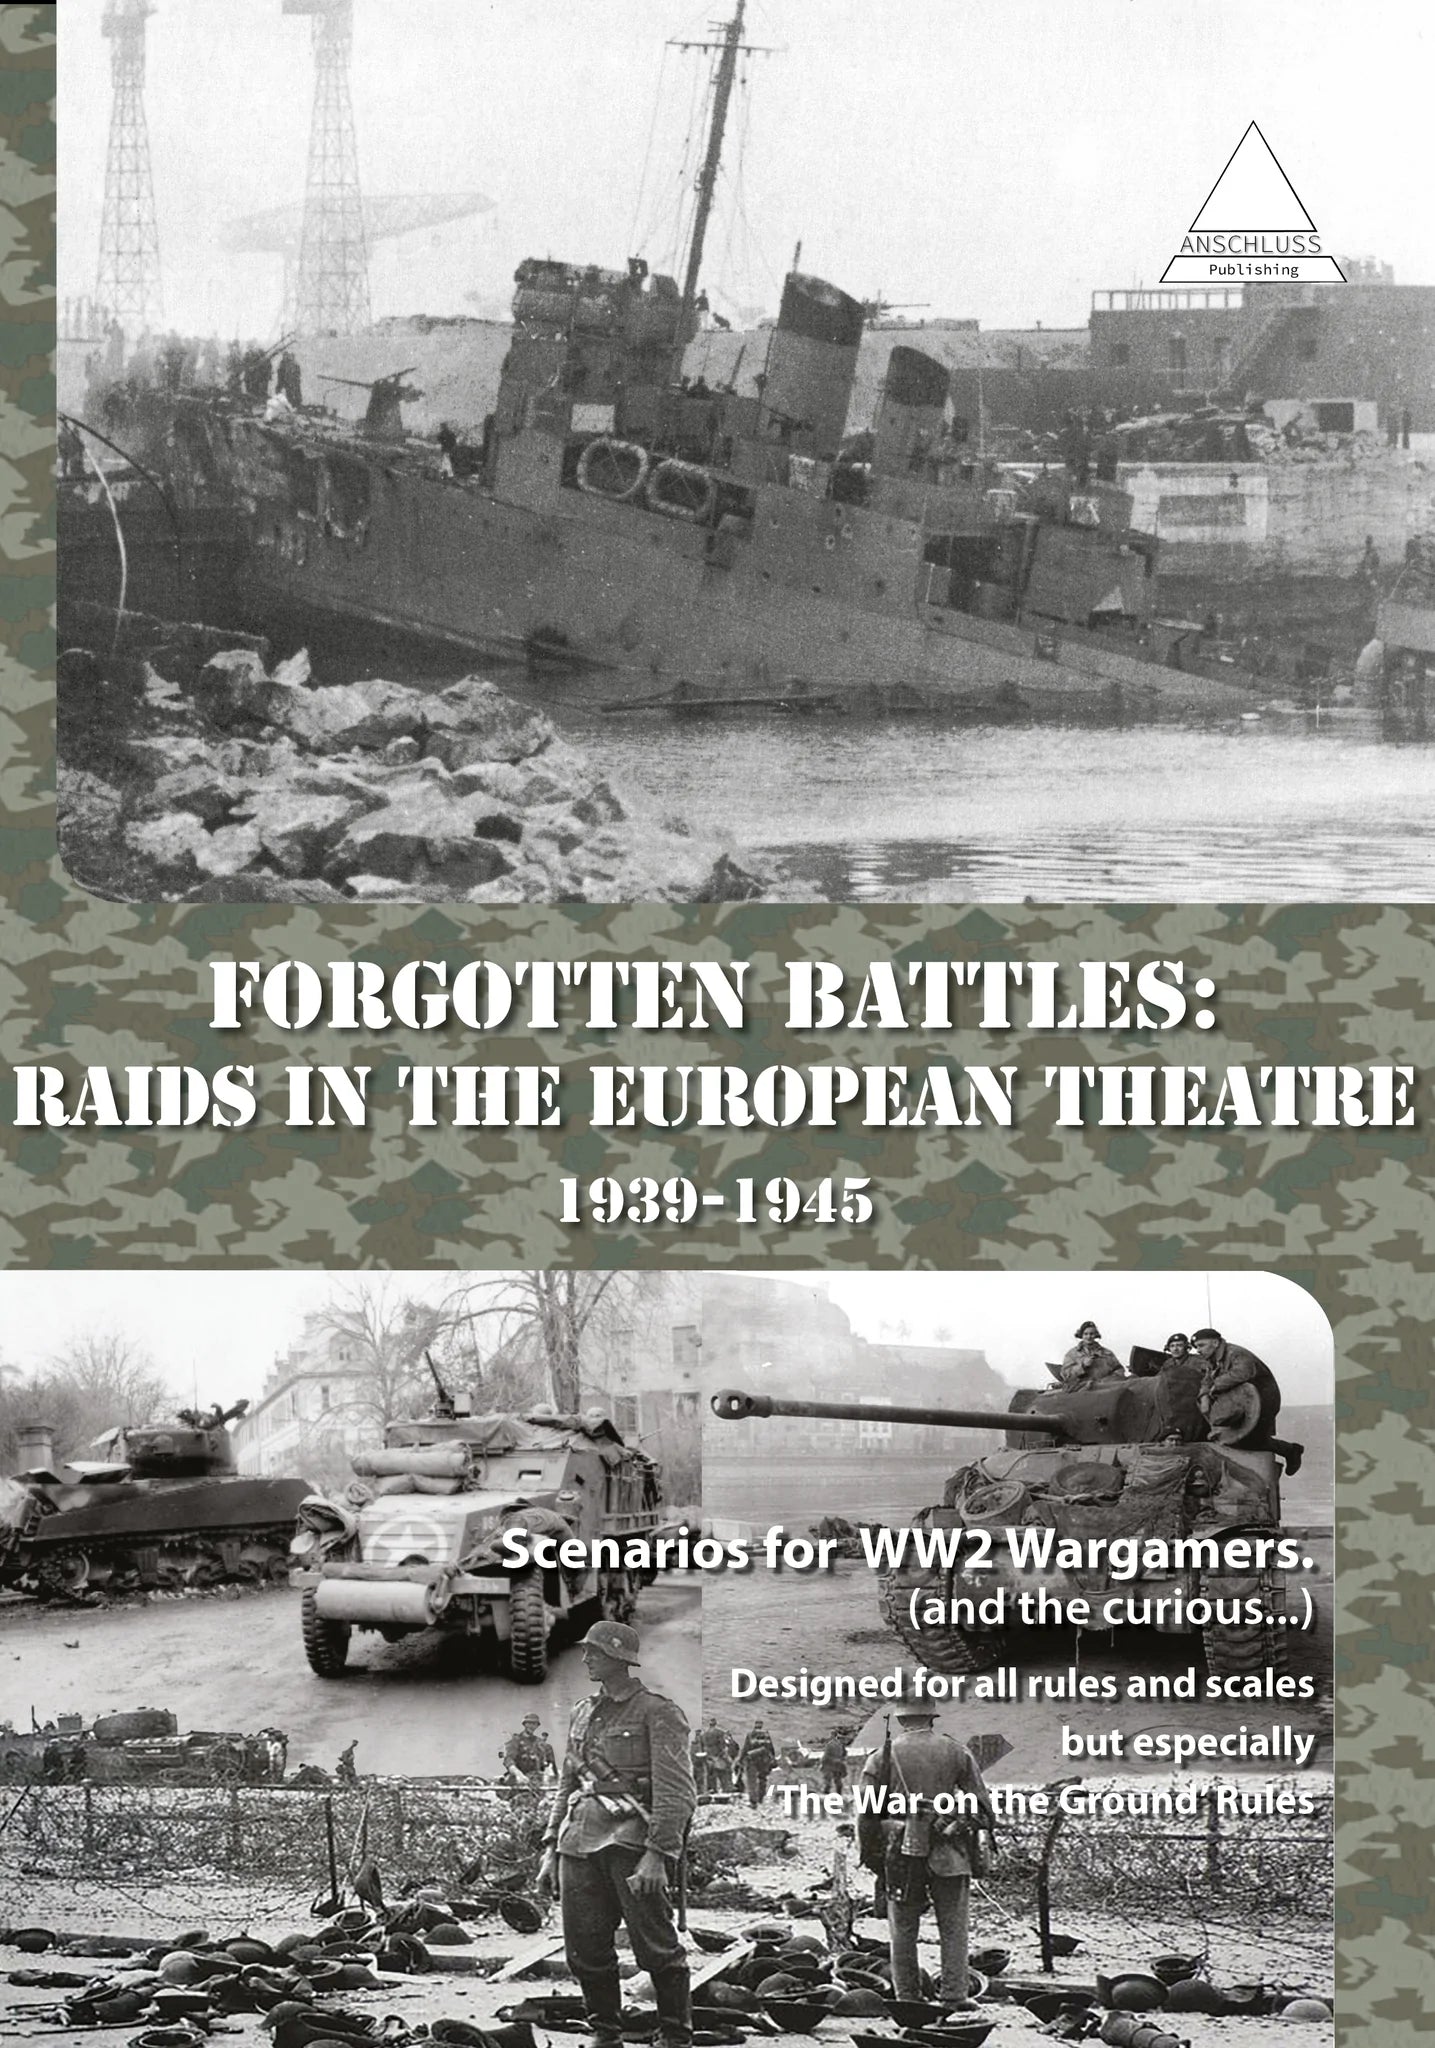 Battles oubliées: des raids dans le théâtre européen 1939-1945